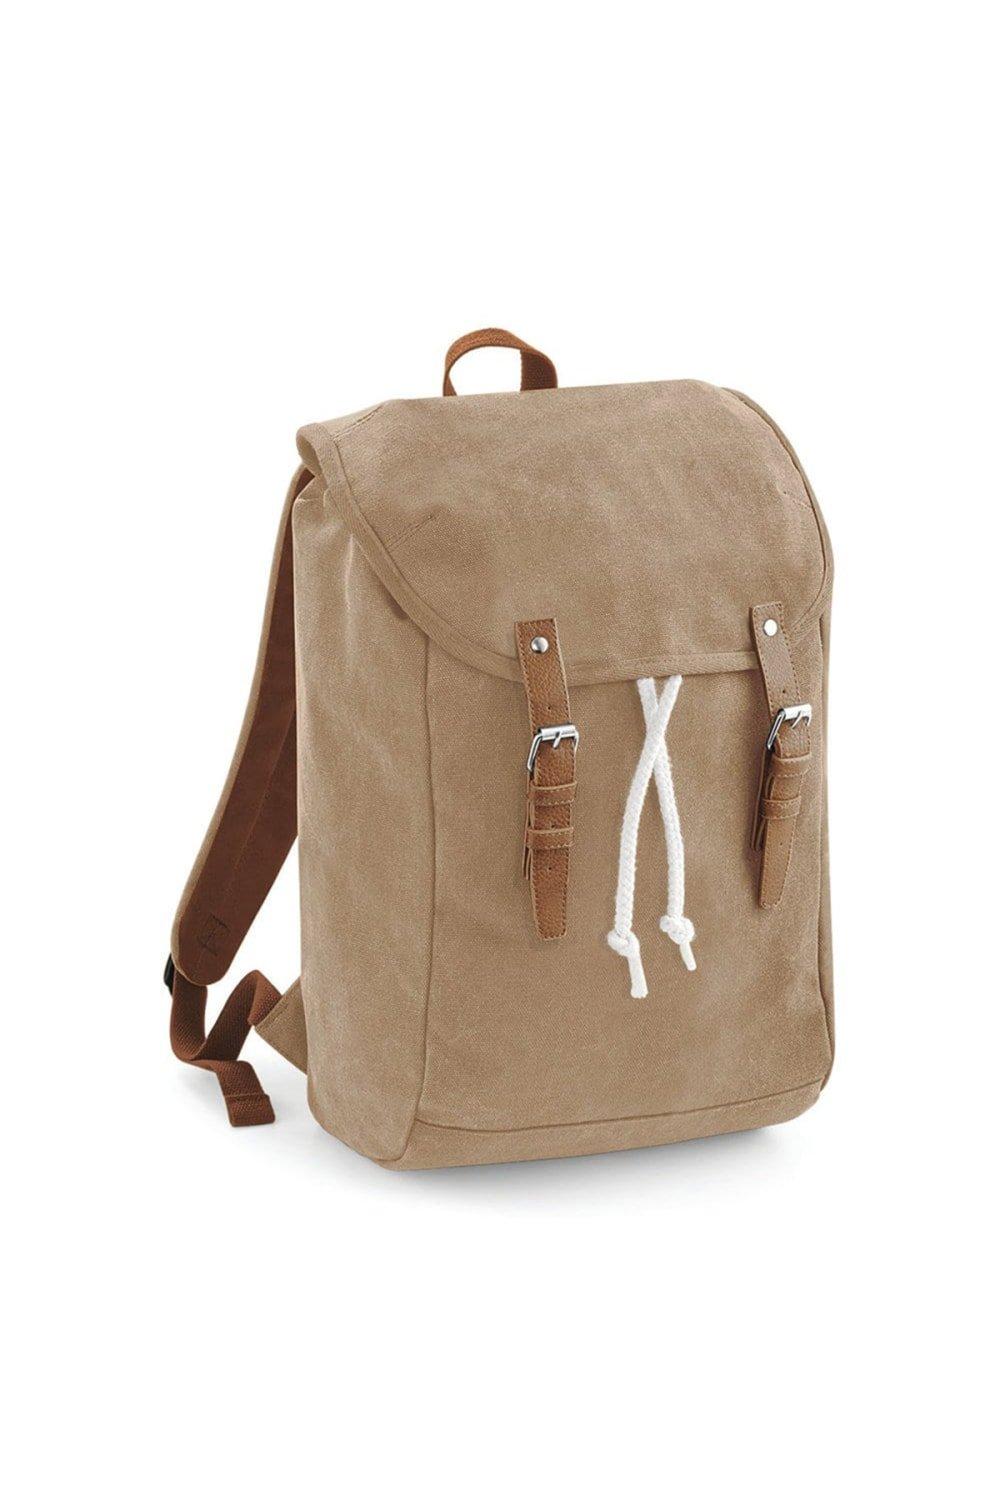 Винтажный рюкзак-рюкзак (2 шт.) Quadra, коричневый винтажный противоугонный рюкзак коричневый